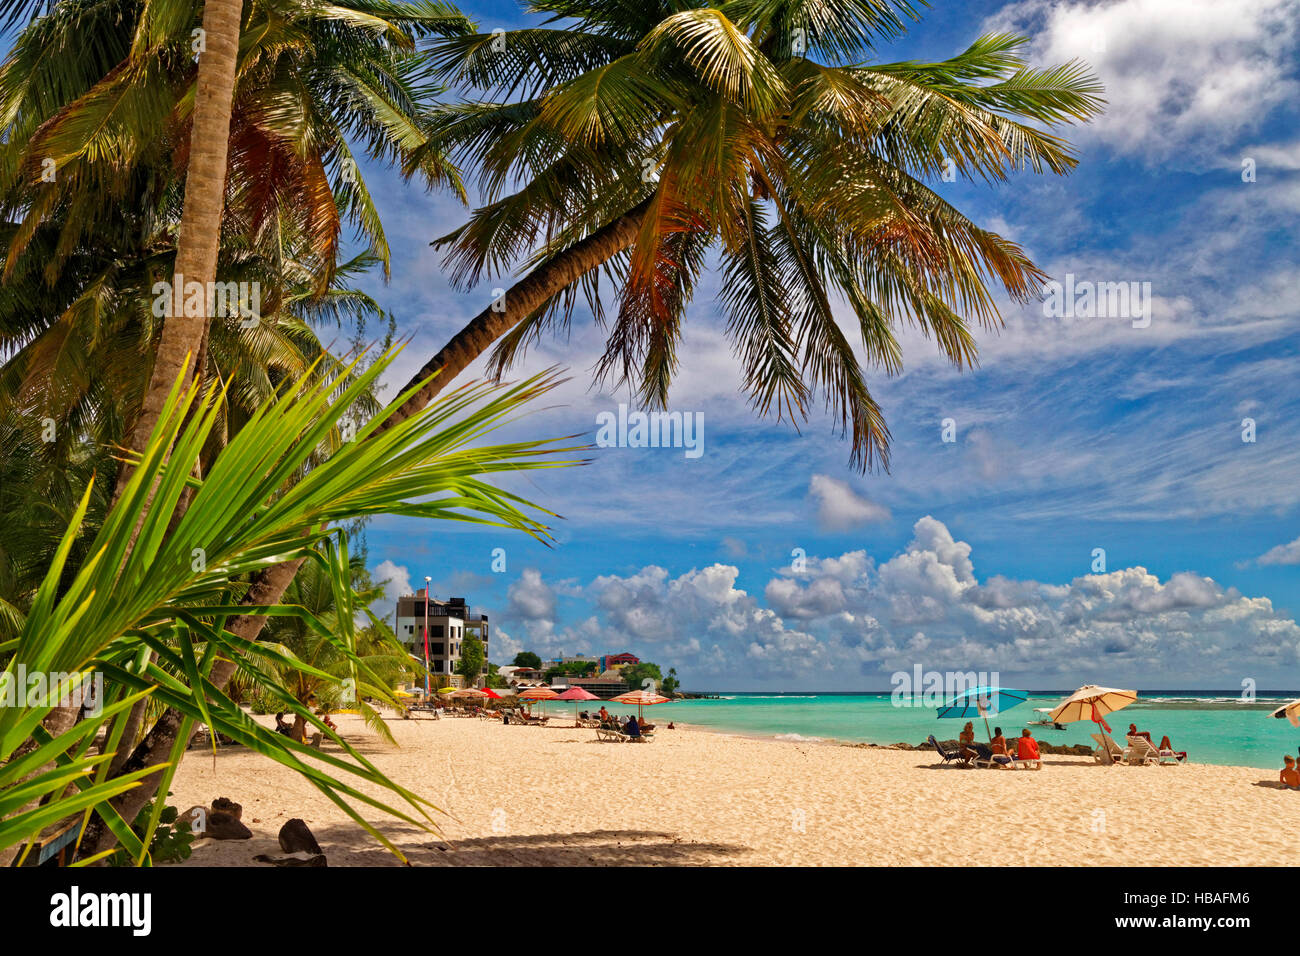 Worthing Beach à Worthing, entre St Lawrence Gap et de Bridgetown, La Barbade, la côte sud, des Caraïbes. Banque D'Images